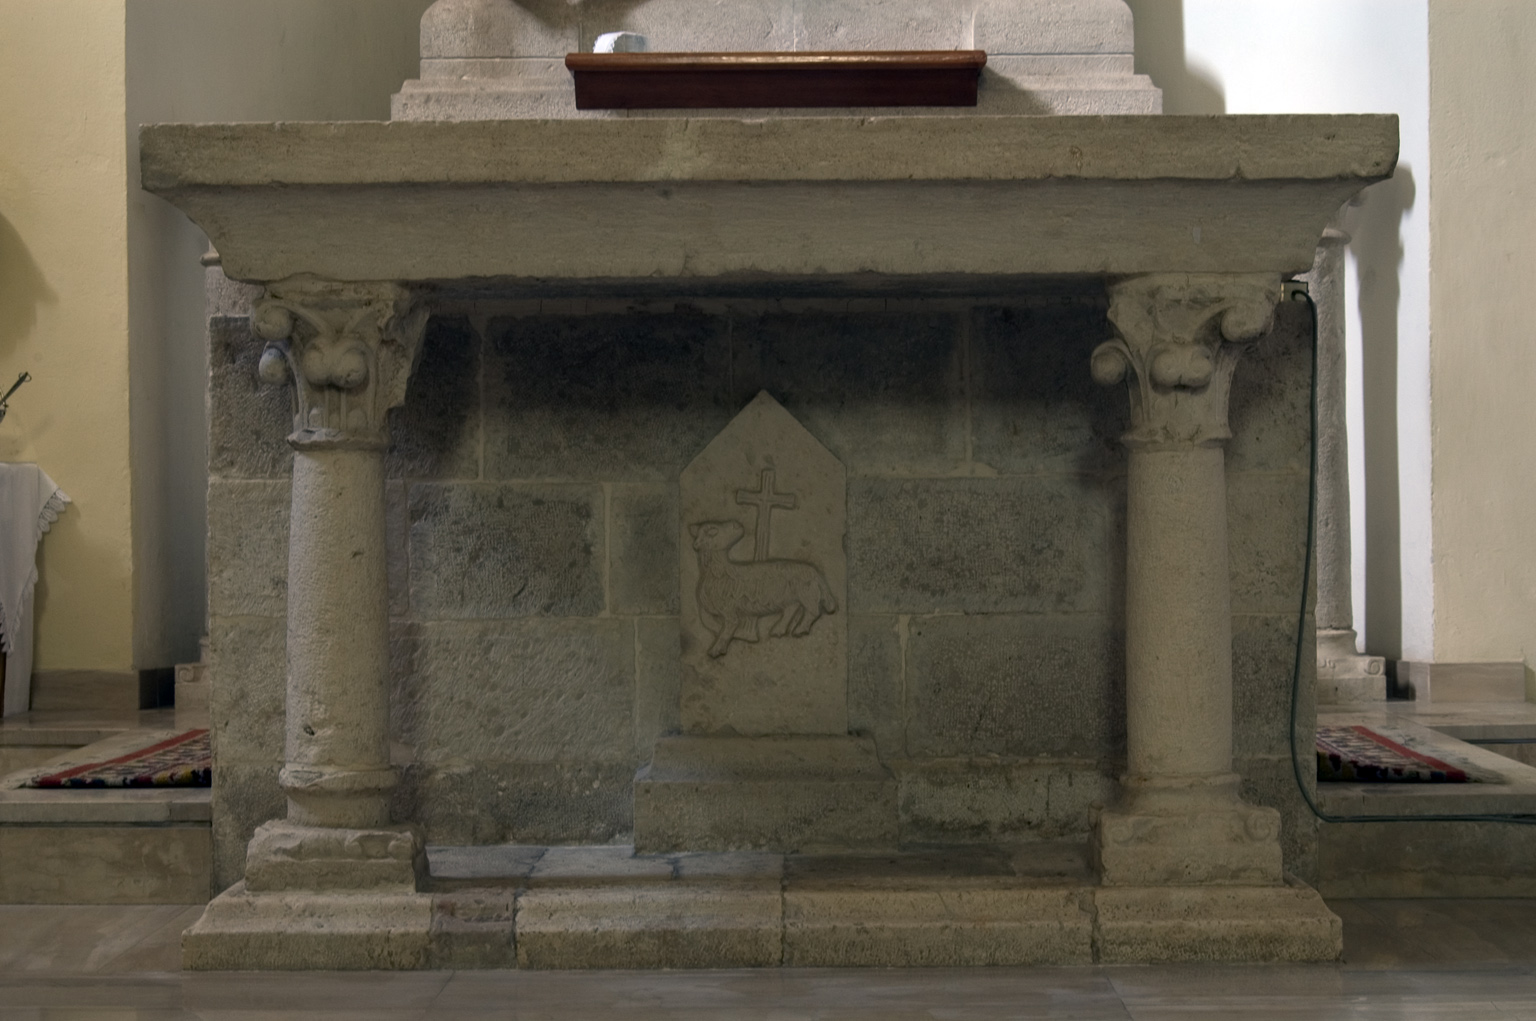 ill.27: Scuola privernate, sec. XIV-XX, Altare con rilievo dell’Agnello mistico, pietra calcarea